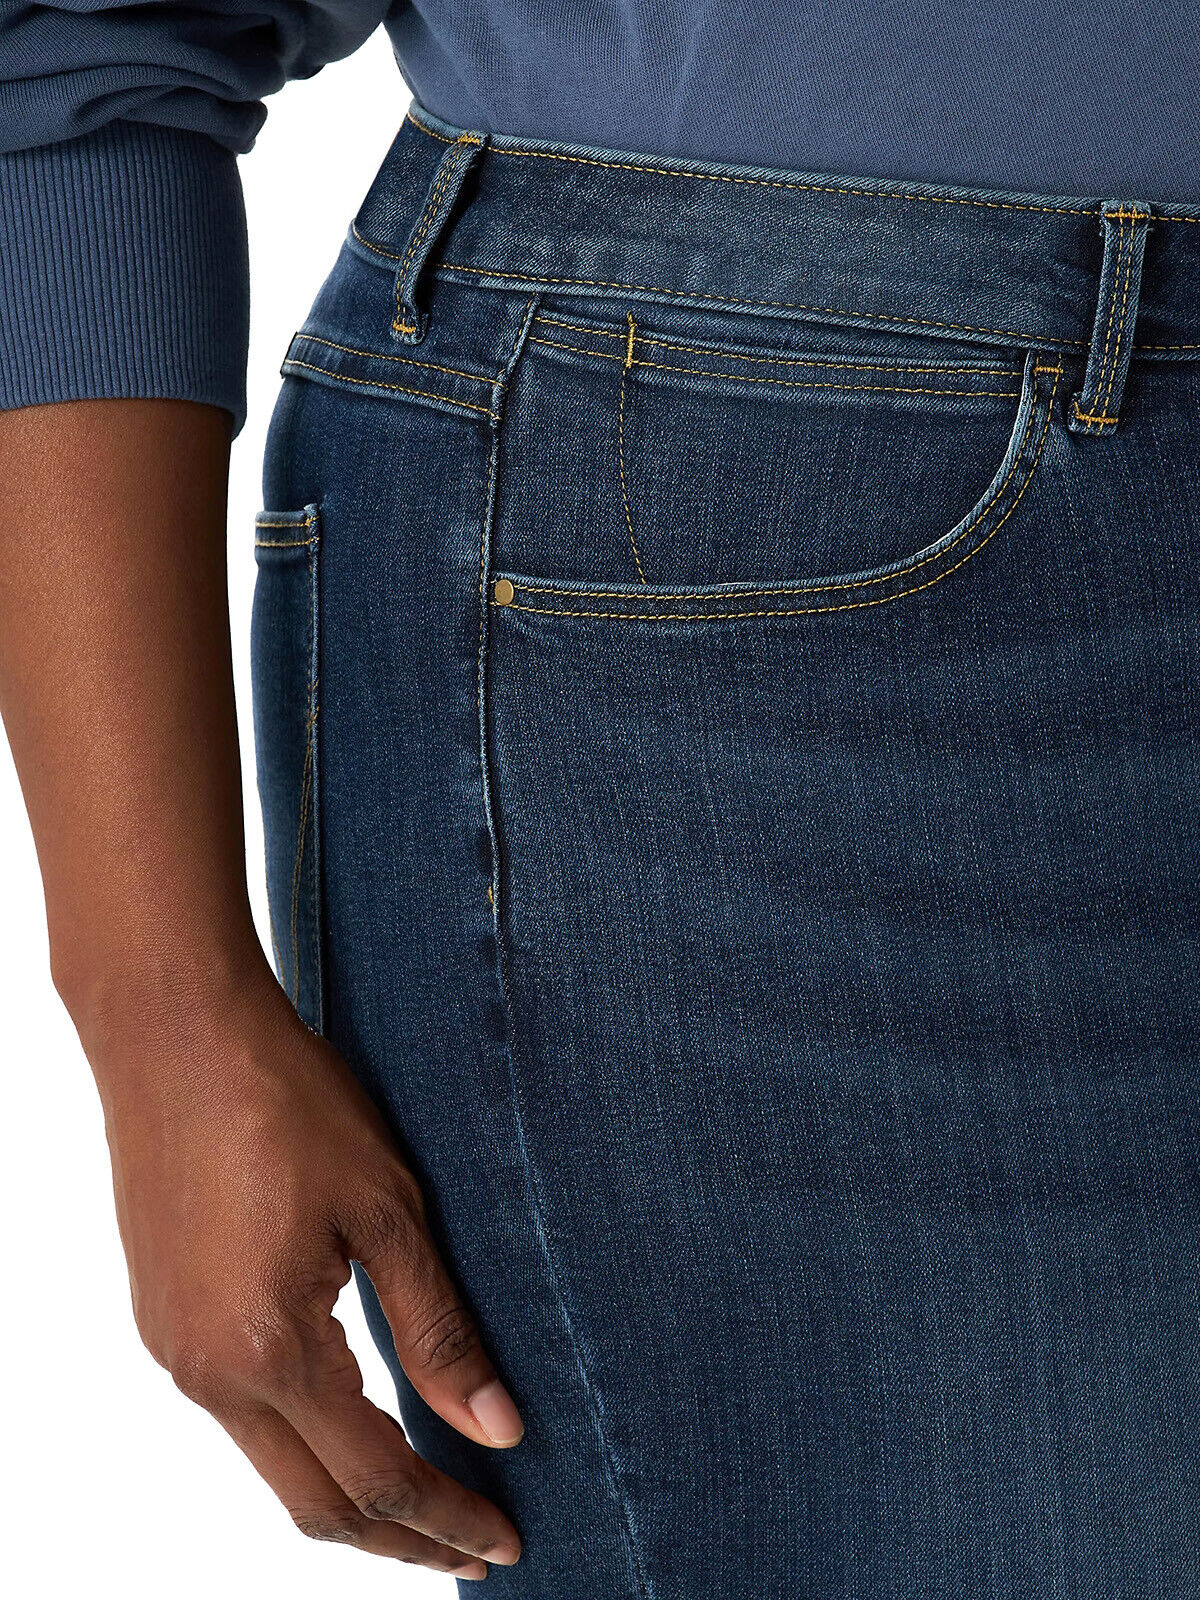 EX Wrangler Dark Denim High Rise Bold Boot Jeans in Sizes 20-28 Regular &amp; Long